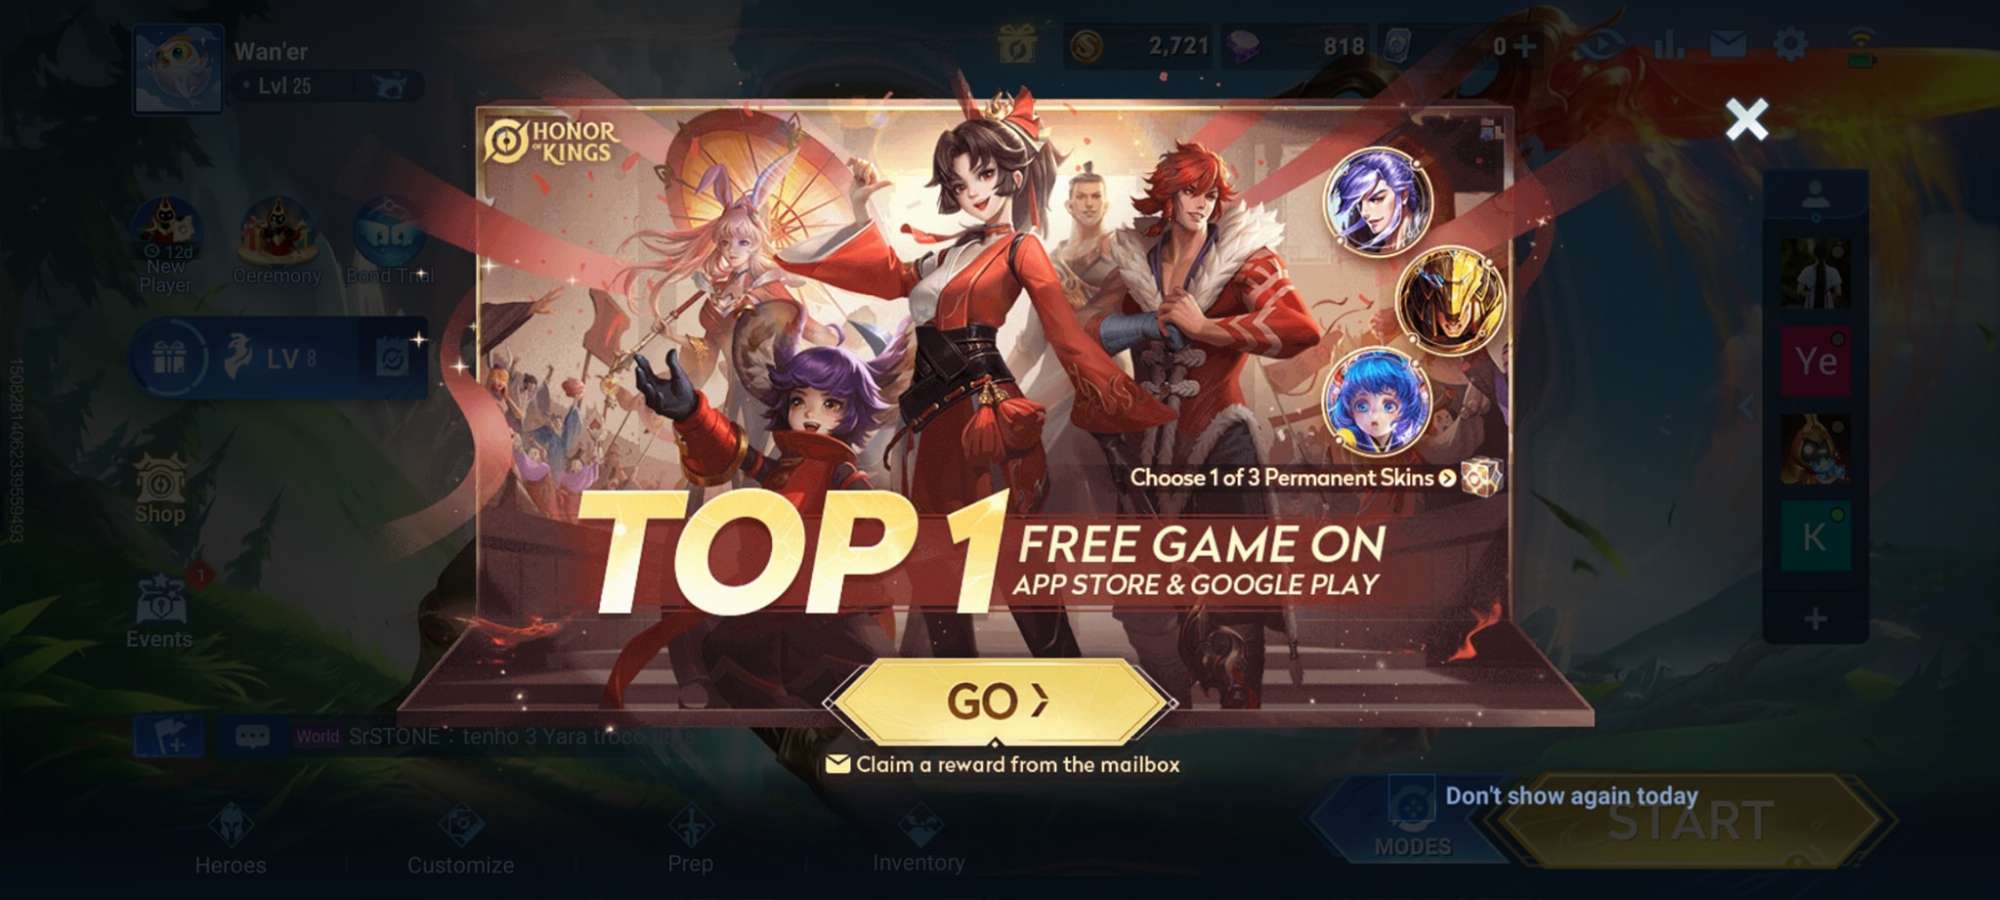 Game hiện đứng top 1 bảng xếp hạng Free game.